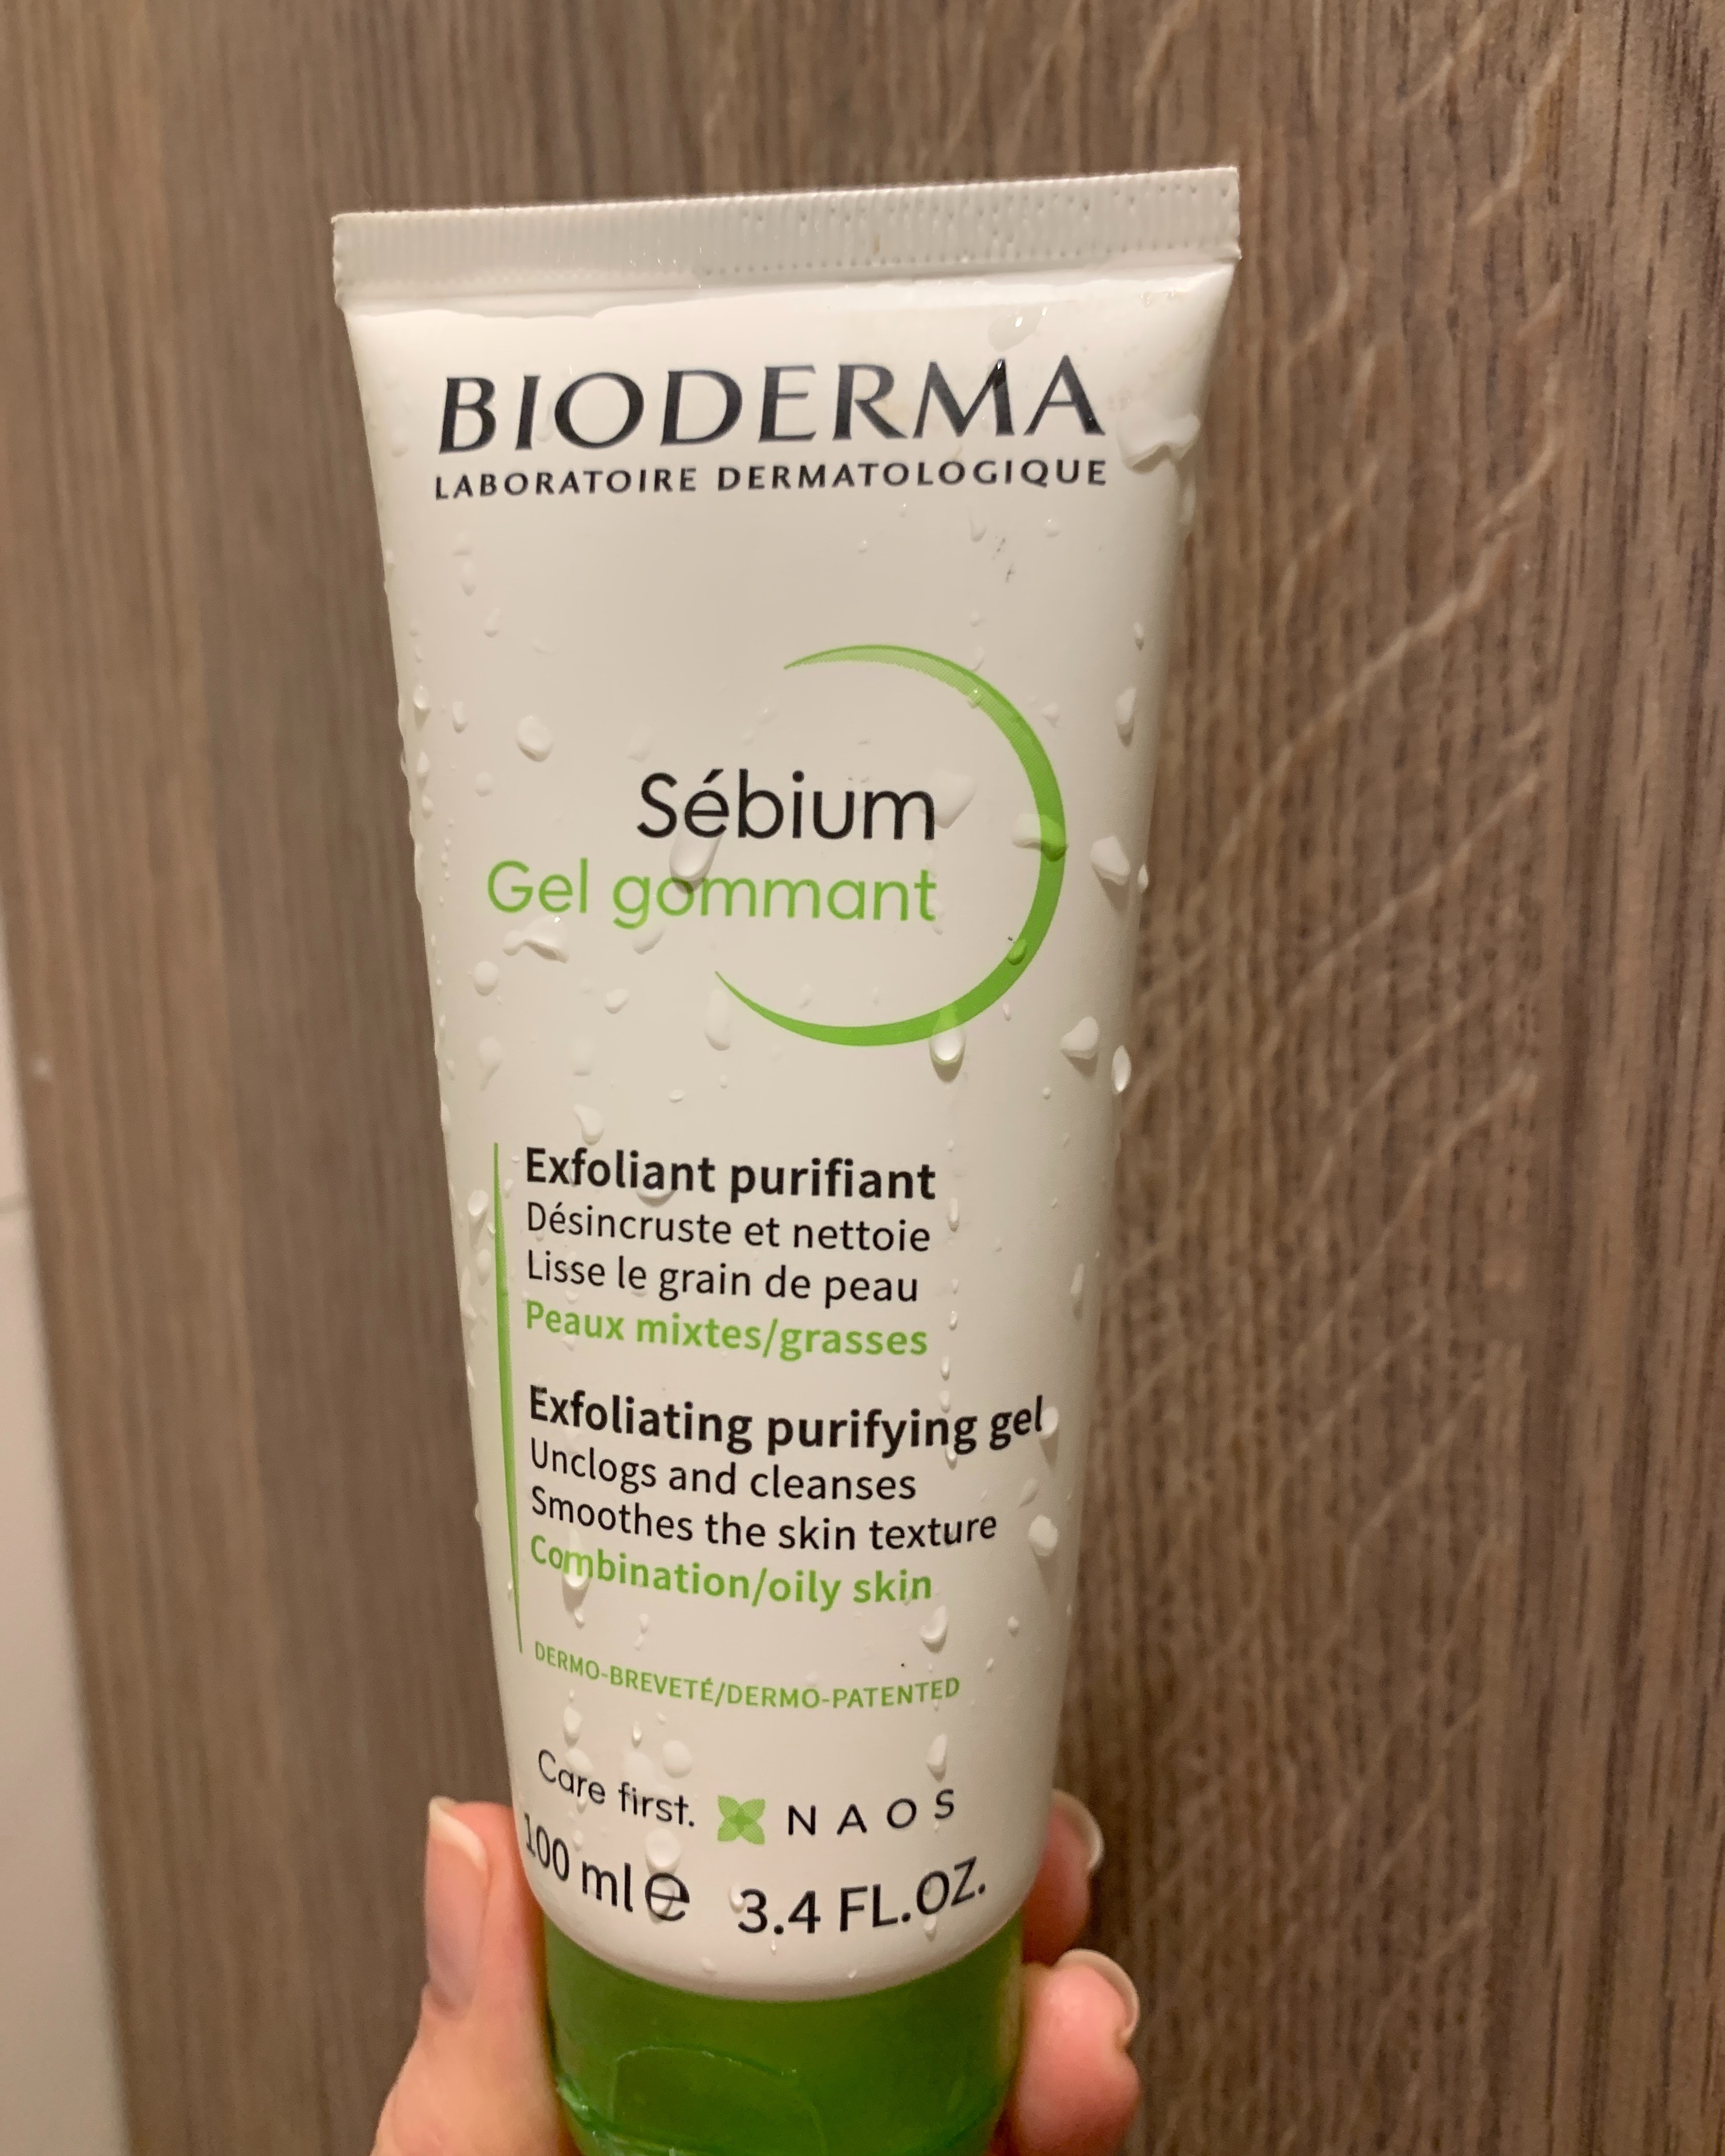 Гель-гомаж від Bioderma: Дієвий засіб навіть для чутливої шкіри